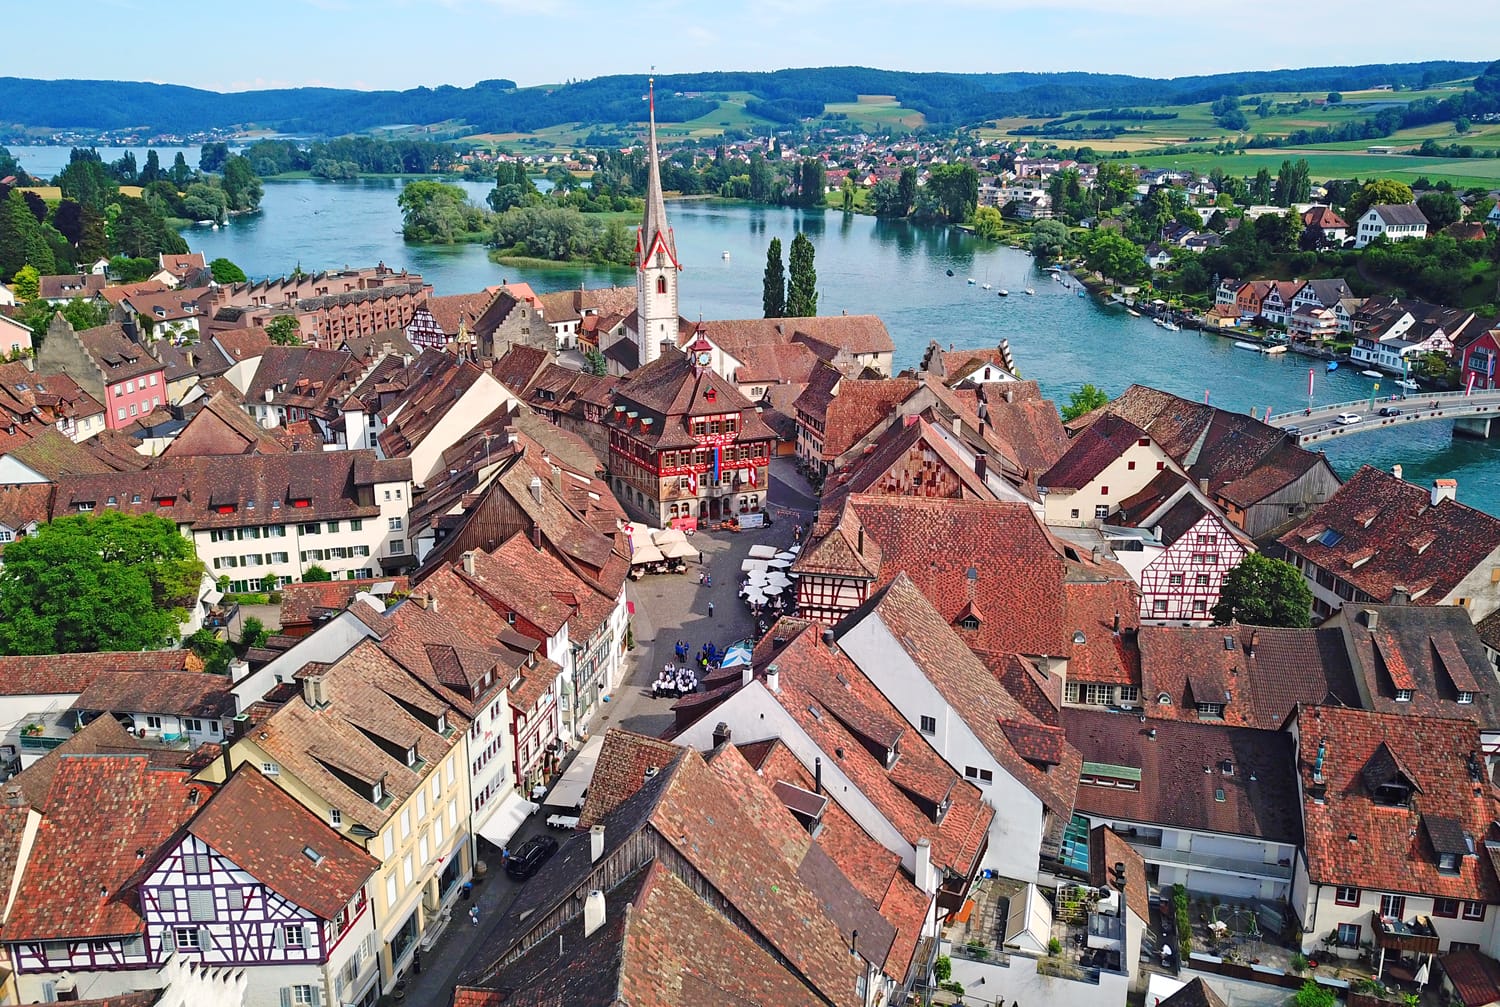 Stein-Am-Rhein medieval city near Shaffhausen, Switzerland